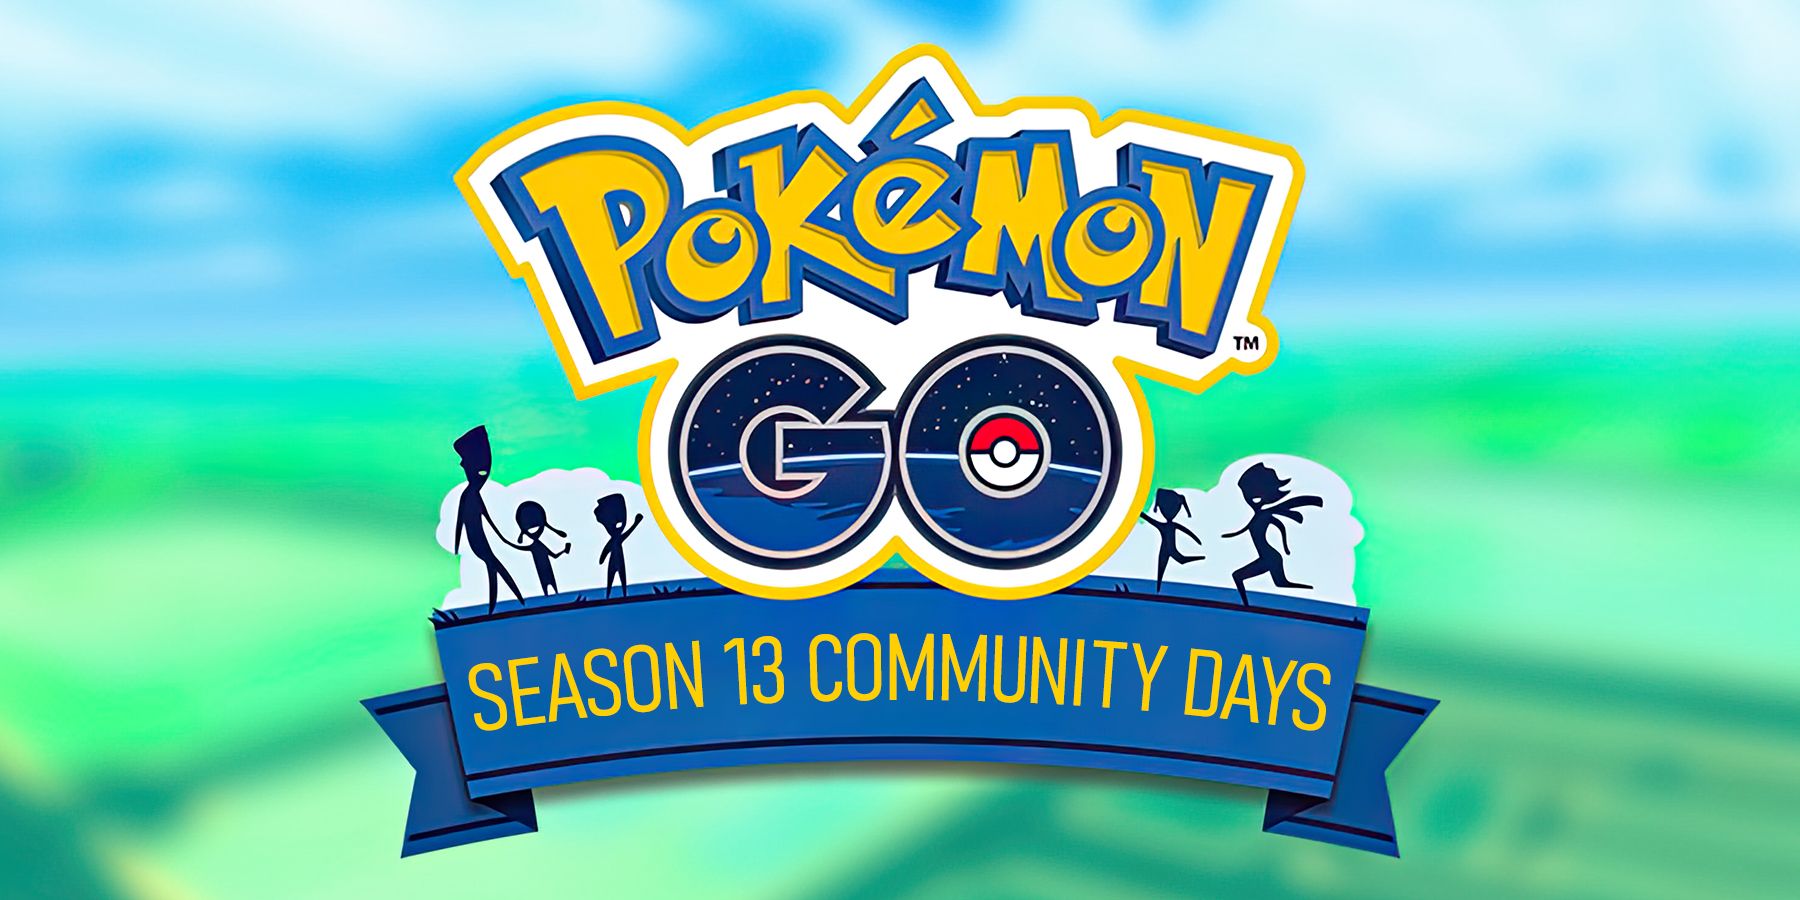 Pokemon GO Season 13 Community Days